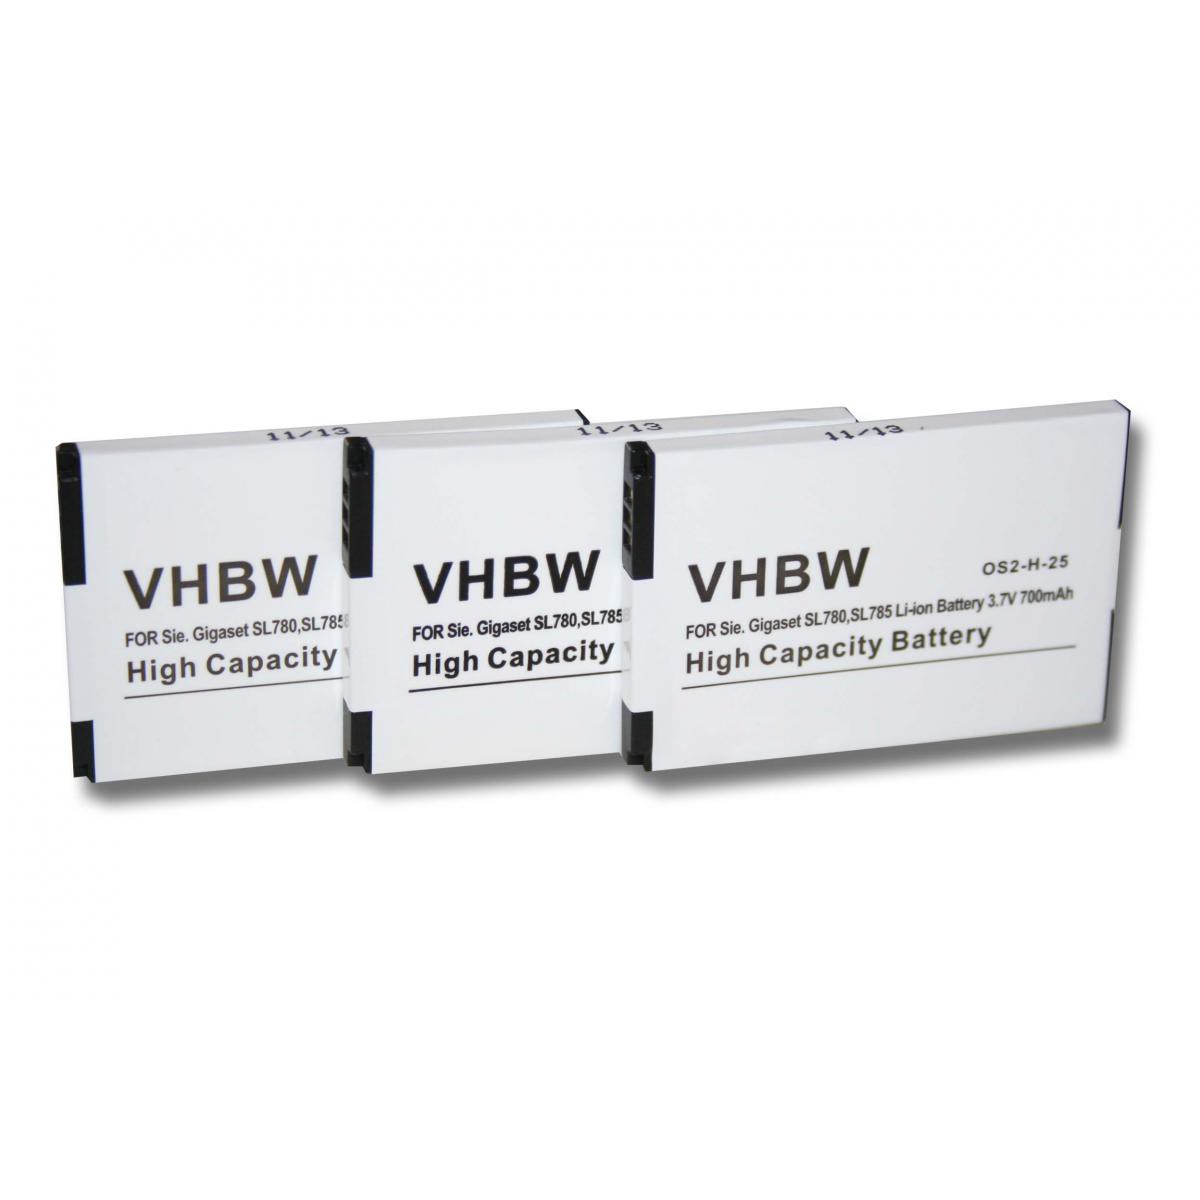 Vhbw - vhbw 3x batterie compatible avec Siemens Gigaset SL610 H Pro, SL780, SL785, SL788, X656 combiné téléphonique téléphone fixe (700mAh, 3,7V, Li-Ion) - Batterie téléphone